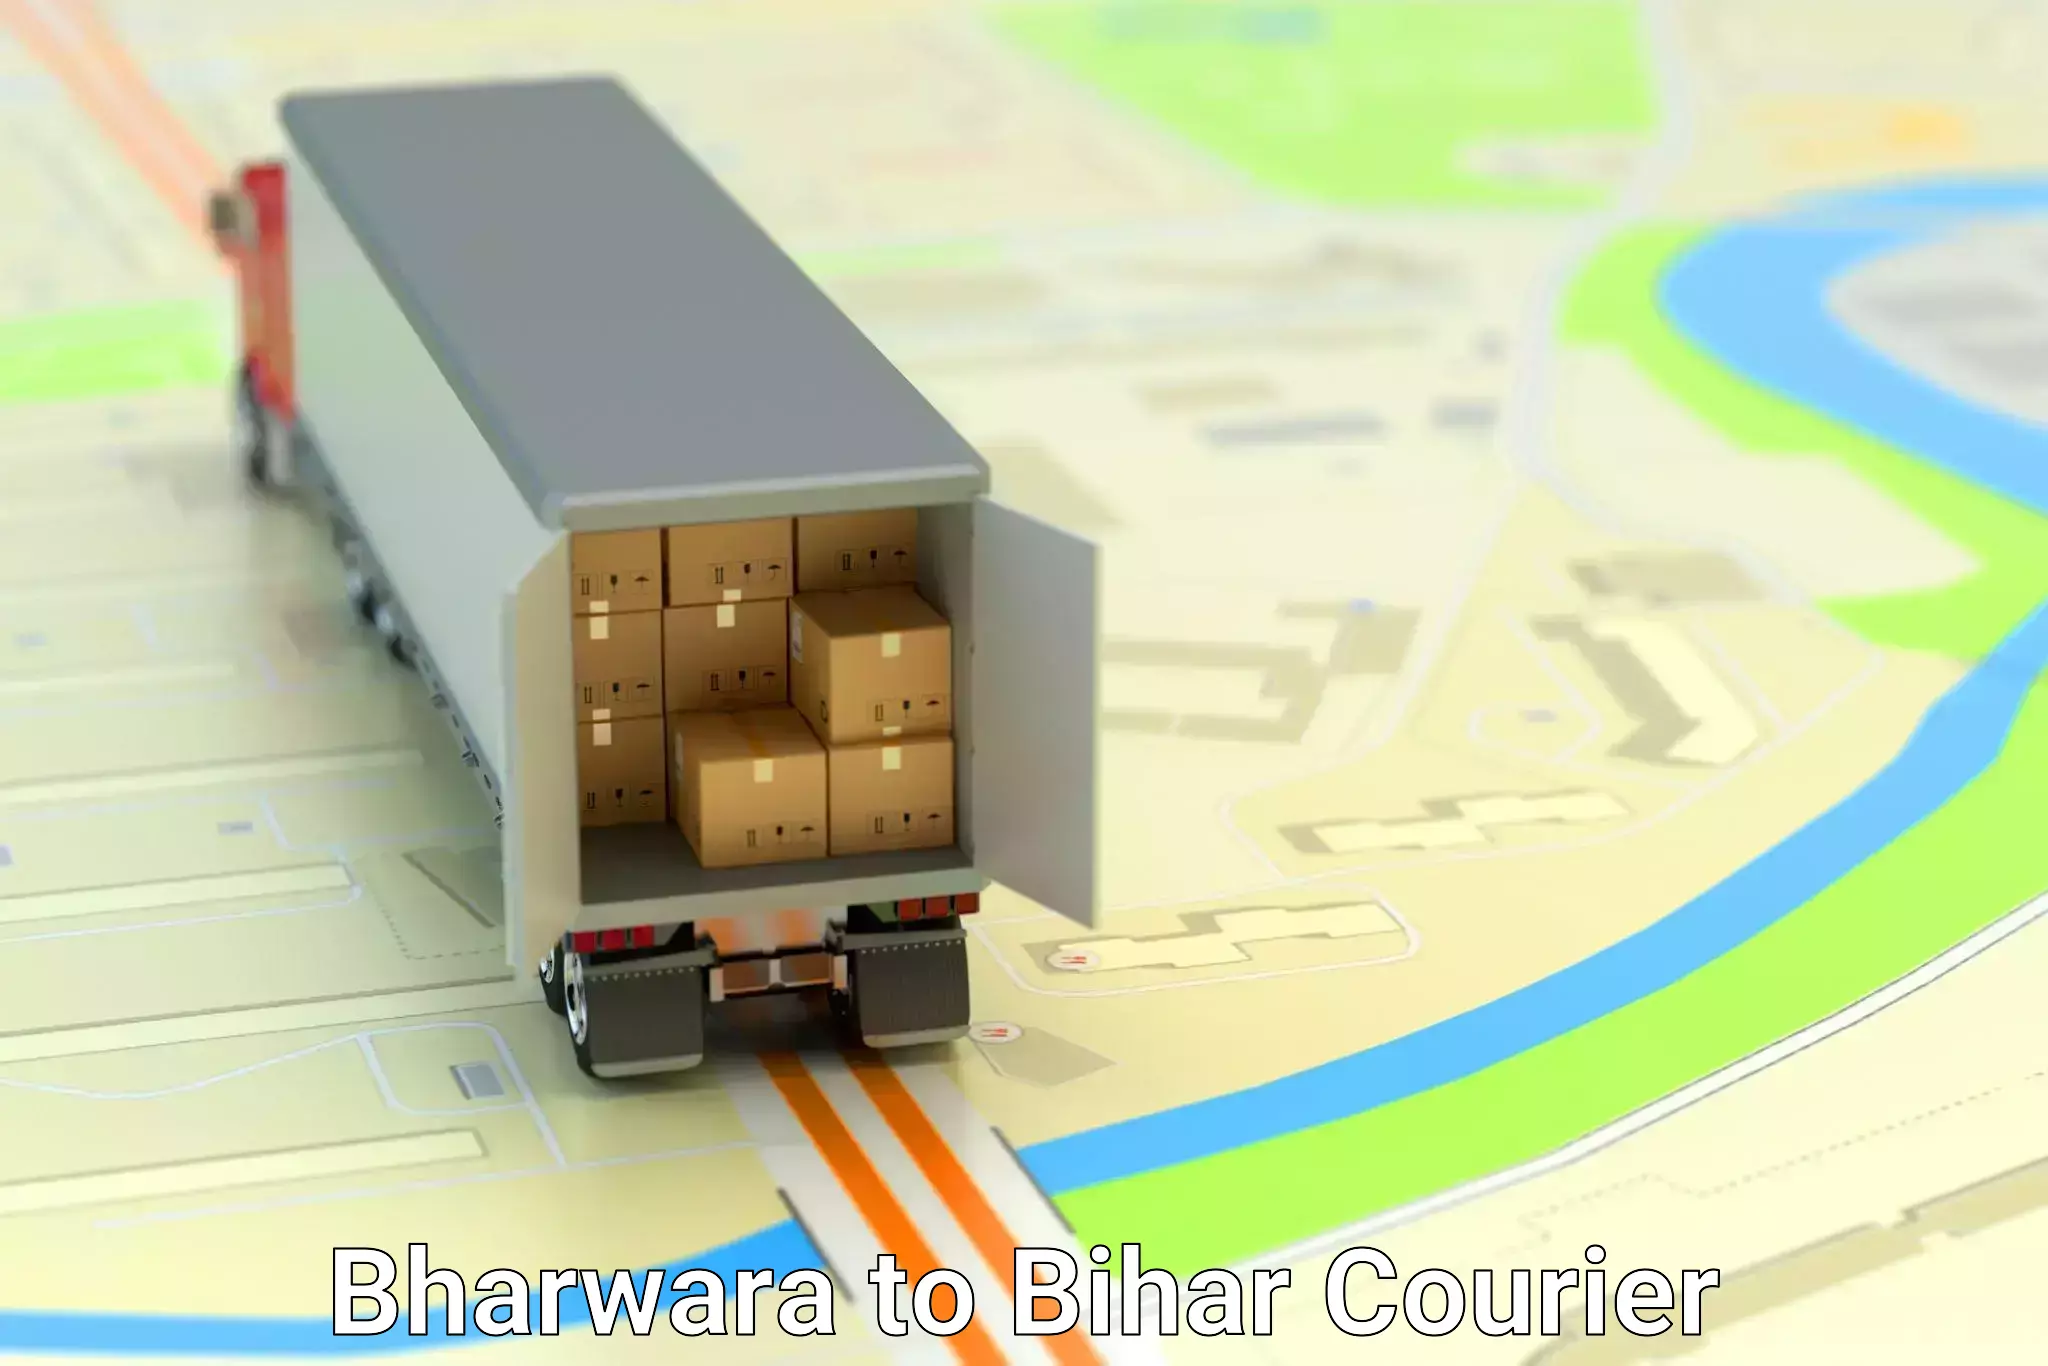 Home relocation experts Bharwara to Piro